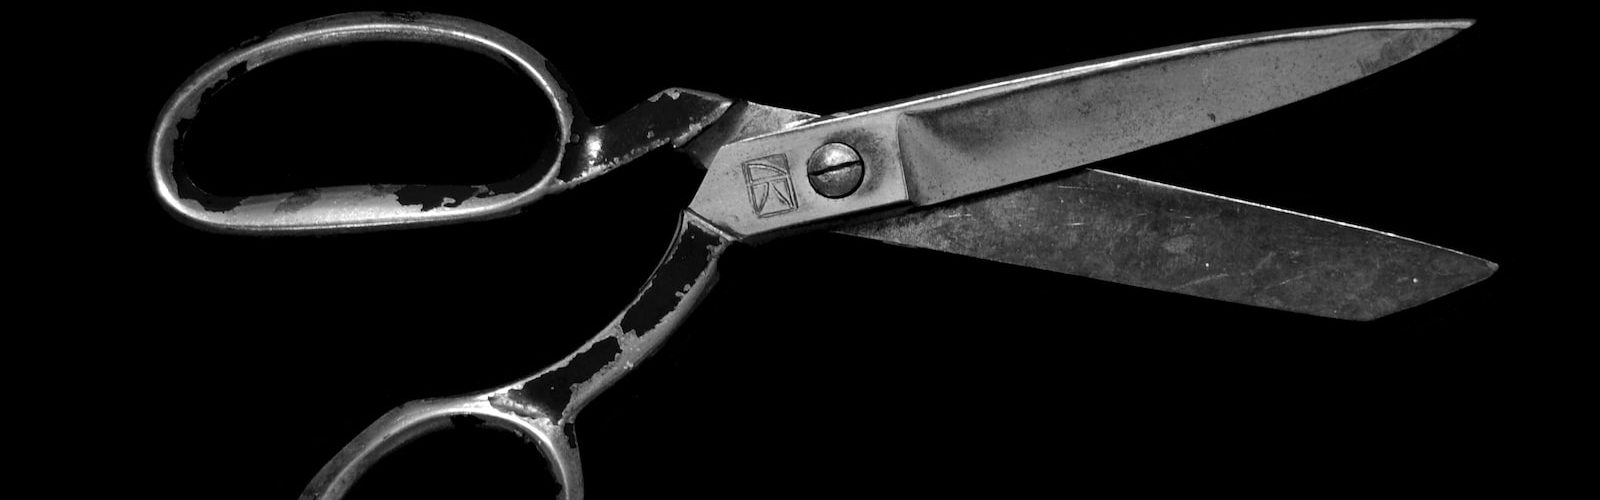 gray steel scissors